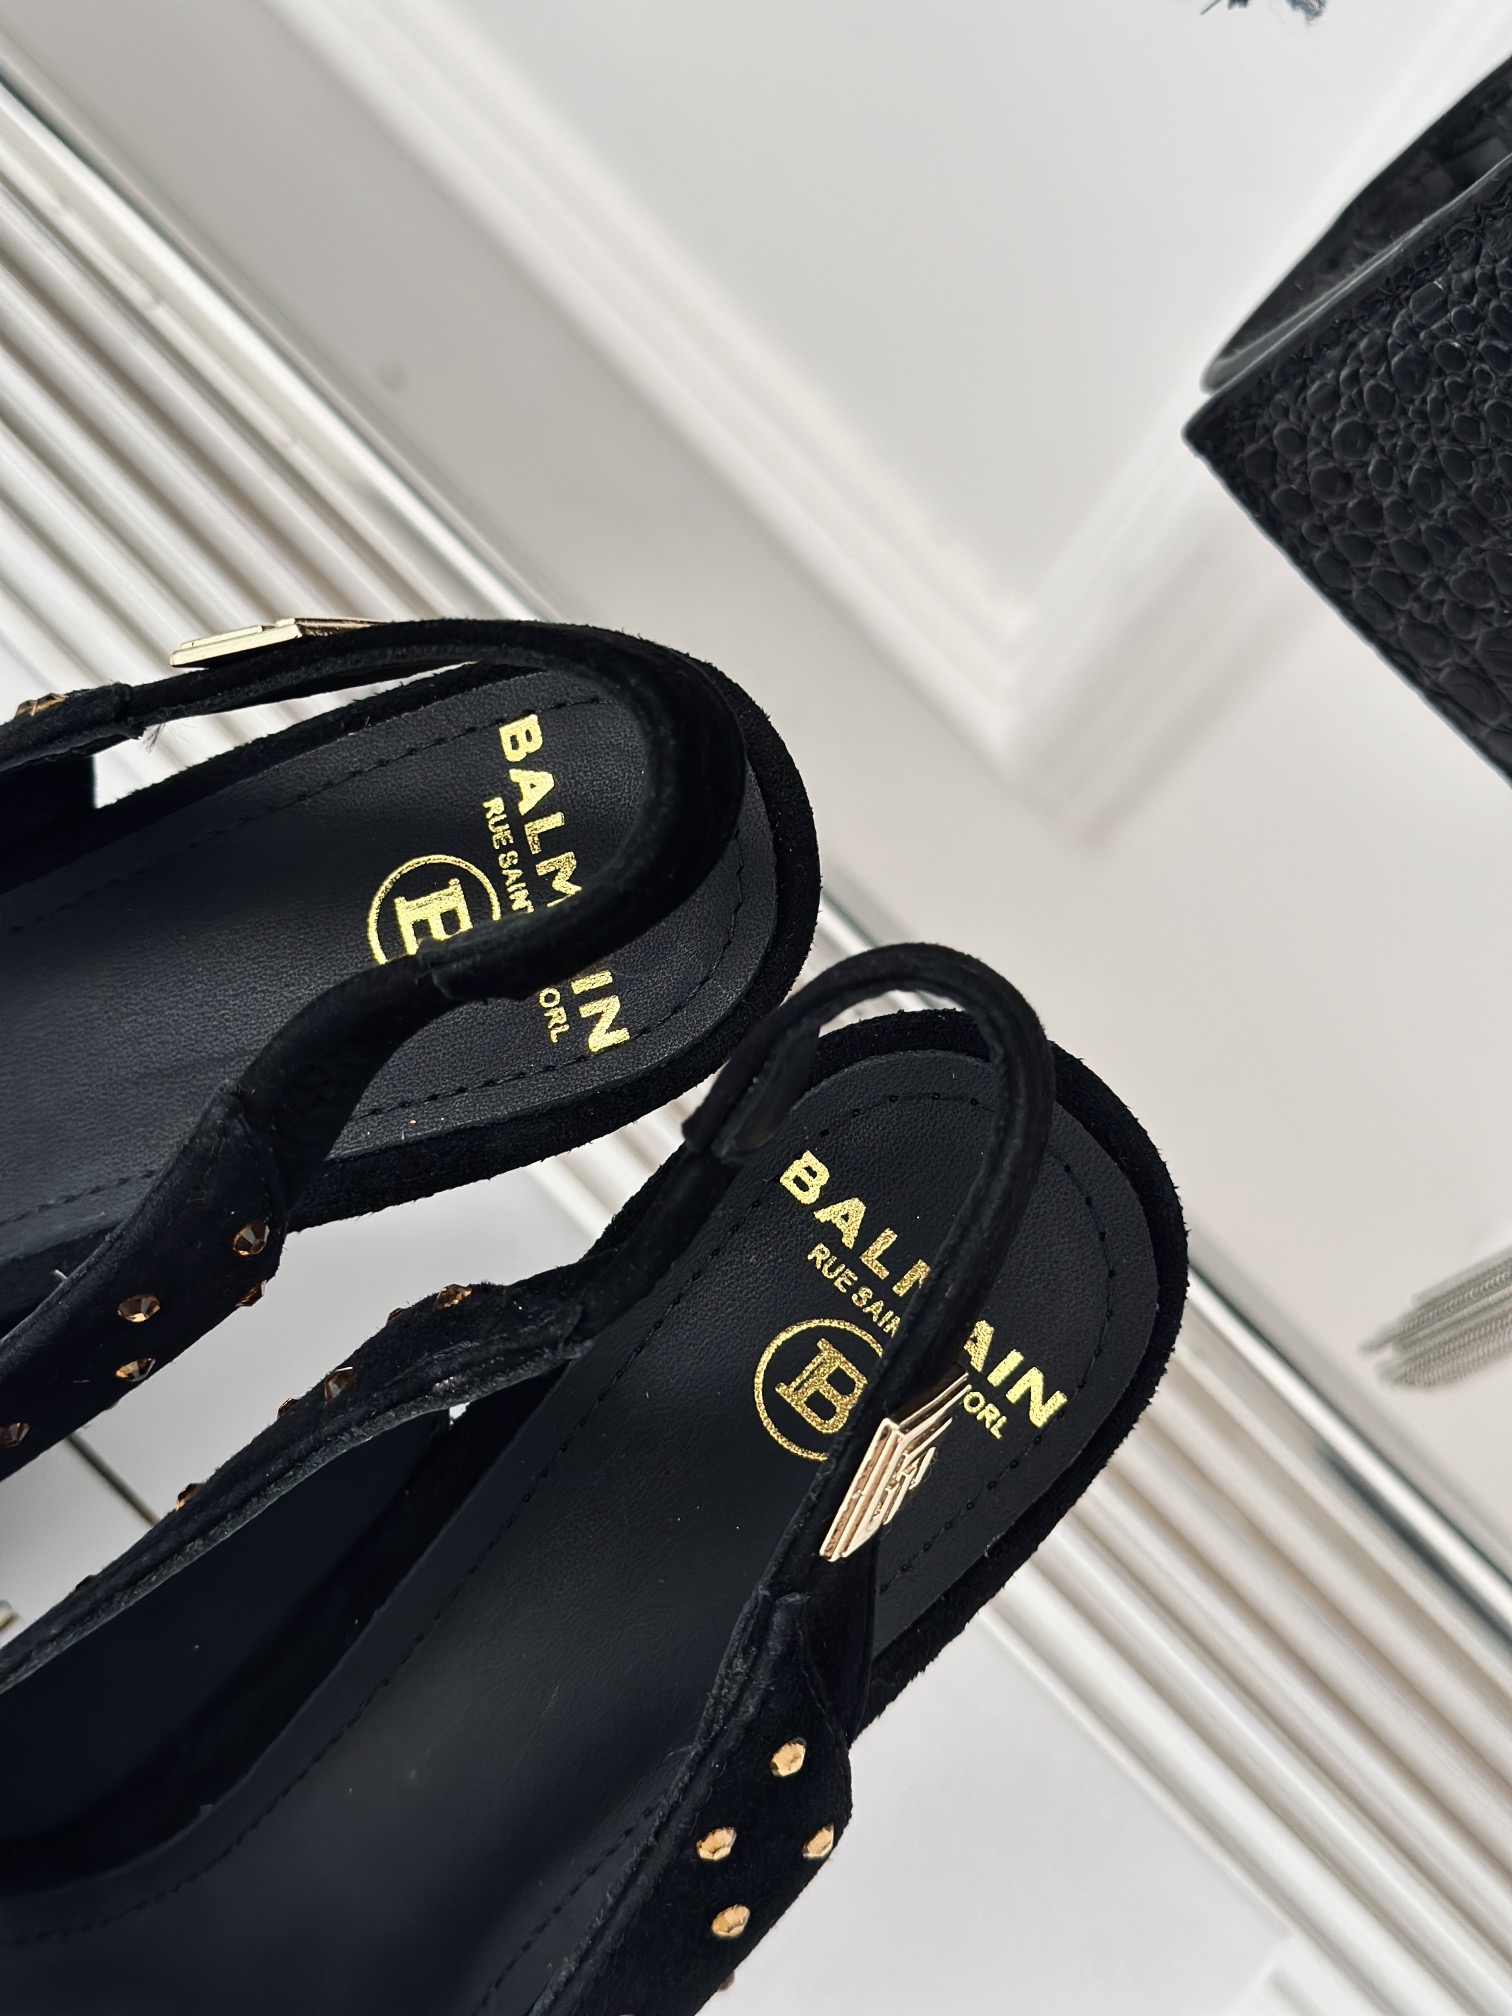 Balmain巴尔曼经典尖头性感铆钉高跟凉鞋来自法国品牌深受众多明星和皇室贵族的亲睐闪亮的装饰和面料是这